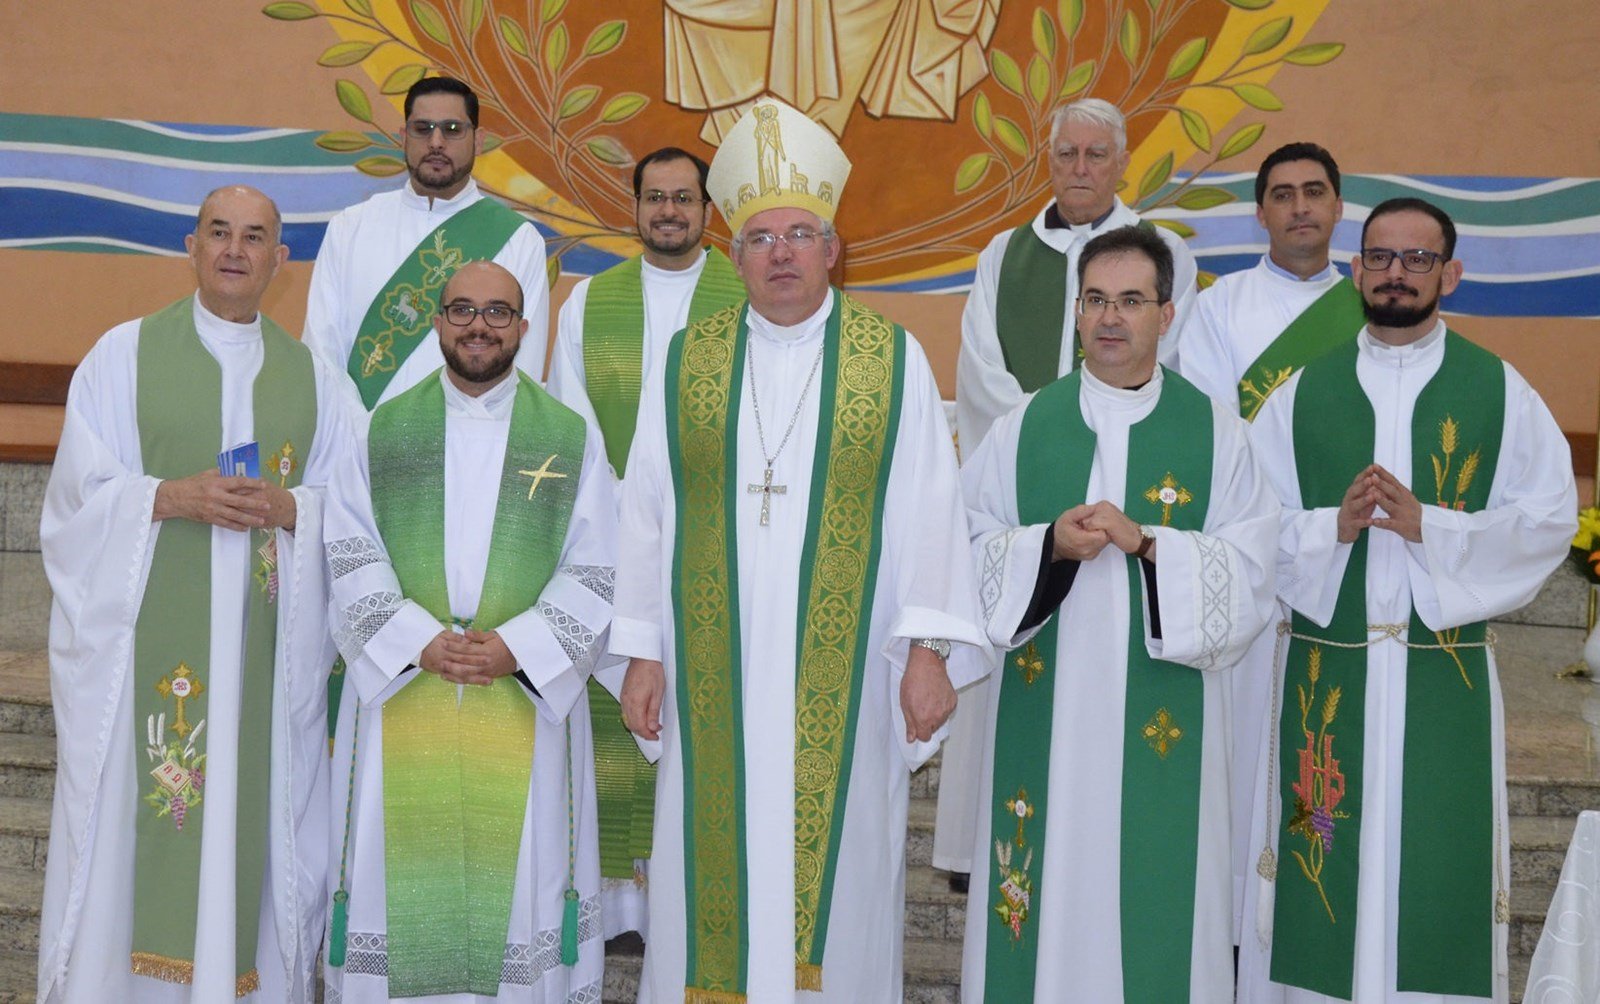 Paróquia de Rolândia celebra 25 anos de presença da Ordem Agostiniana